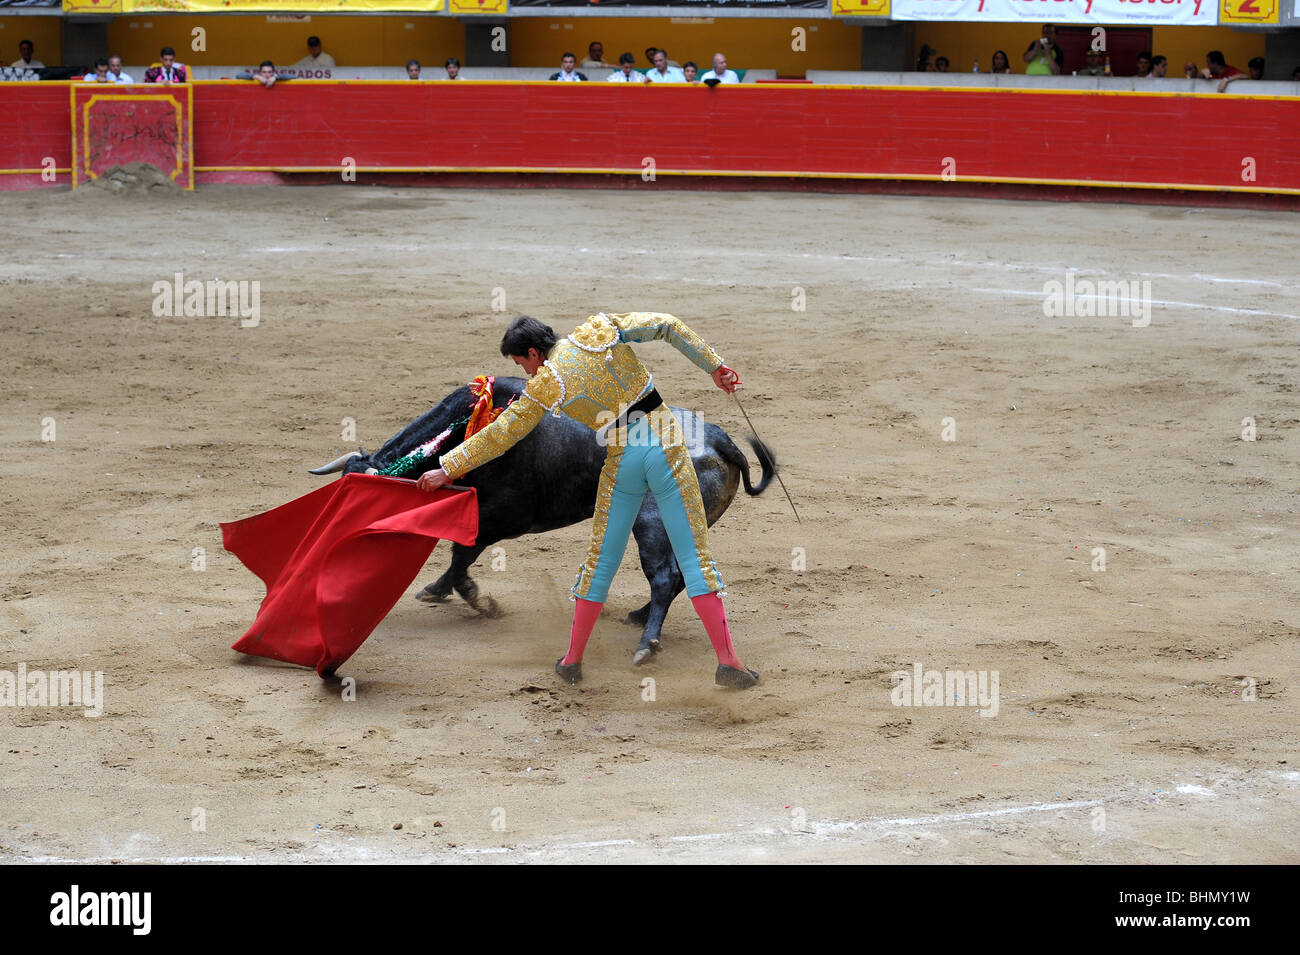 Matador kämpft einen Stier auf einem Stierkampf-Jahrmarkt in Medellin, Kolumbien. Stockfoto